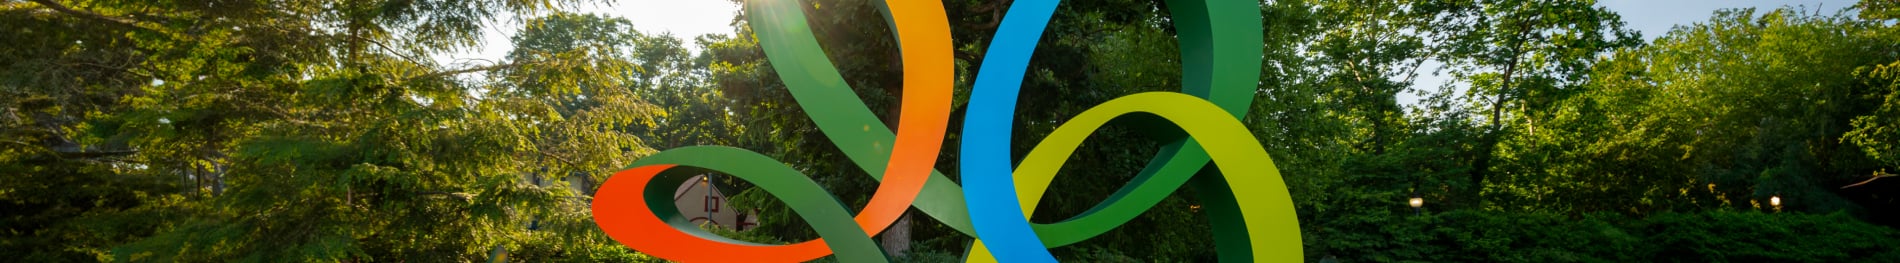 Coaster Tree Logo at Busch Gardens Williamsburg.